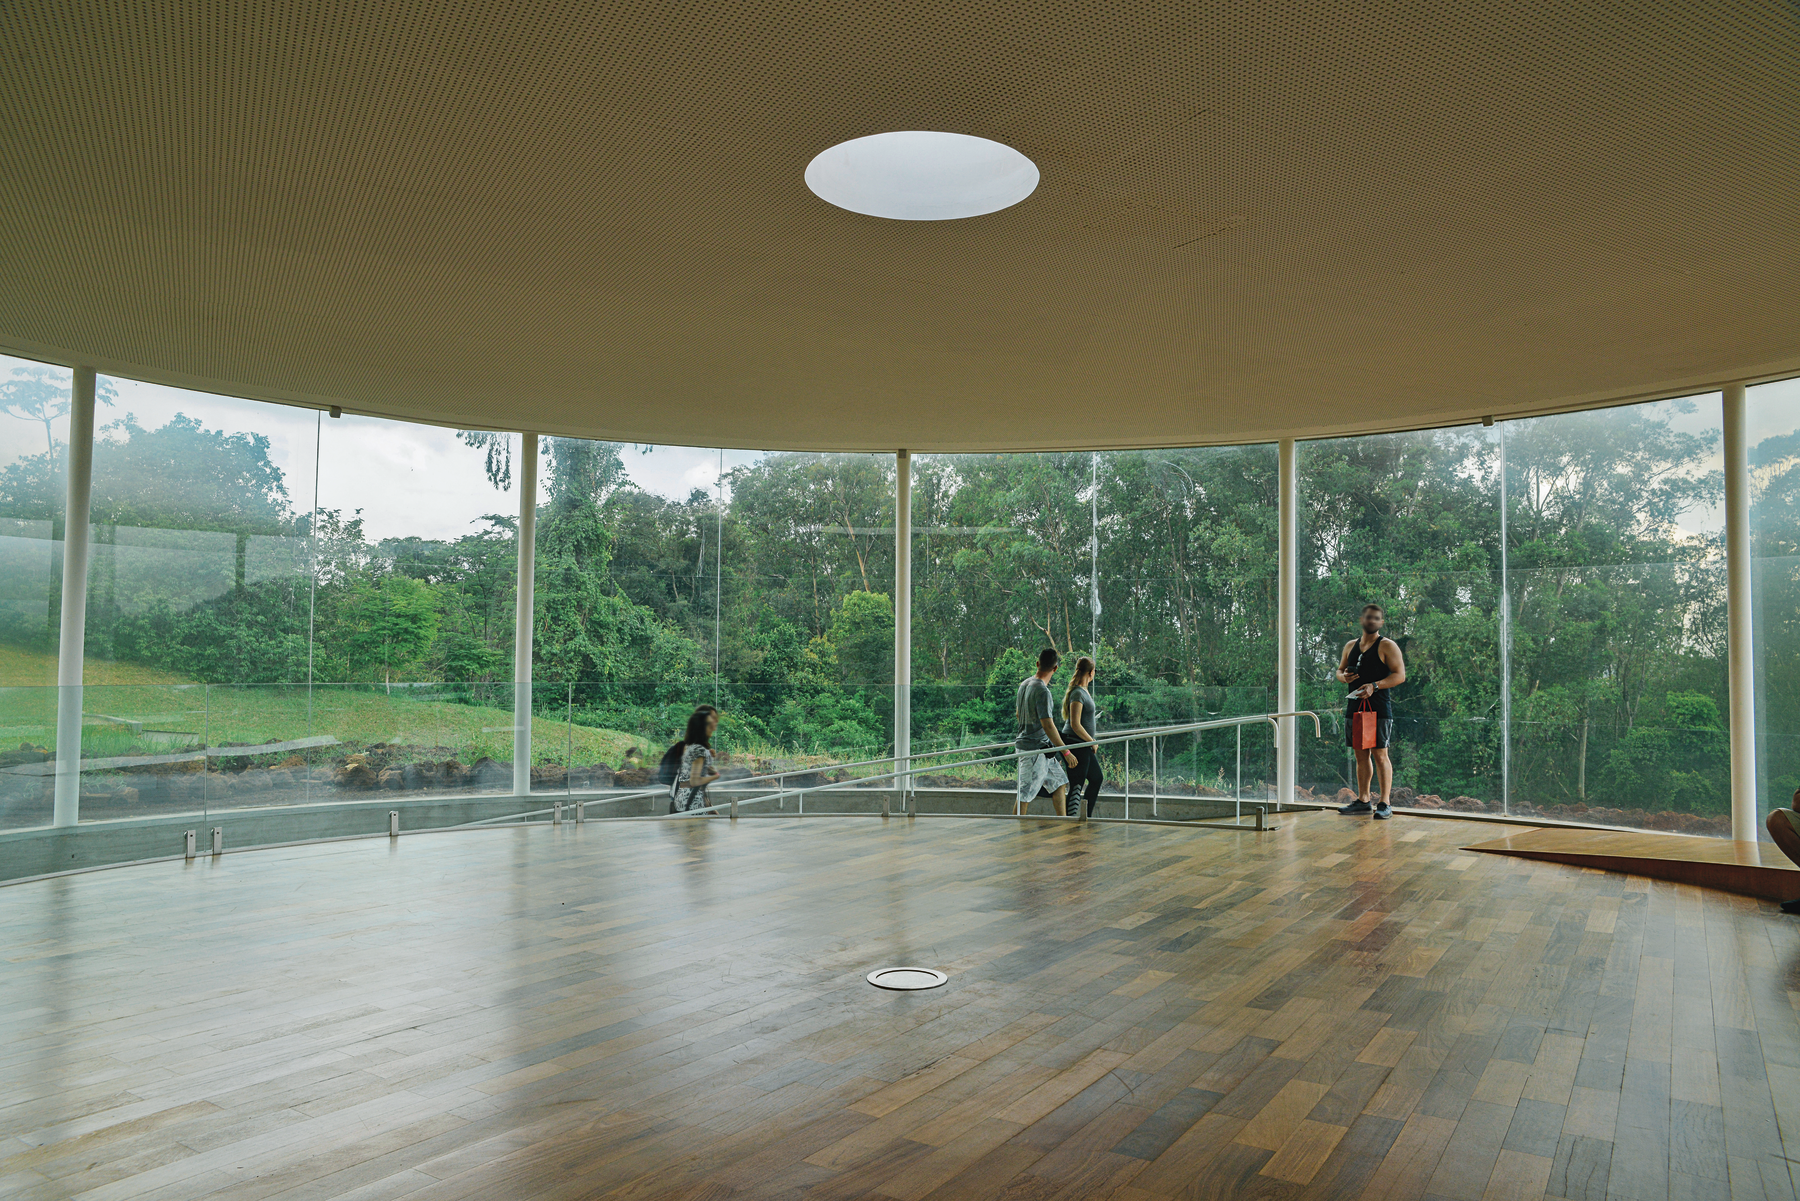 Fotografia. Interior de um pavilhão circular com paredes de vidro e vegetação na área externa. O salão tem piso de madeira, e uma rampa com corrimão. Há pessoas descendo pela rampa.